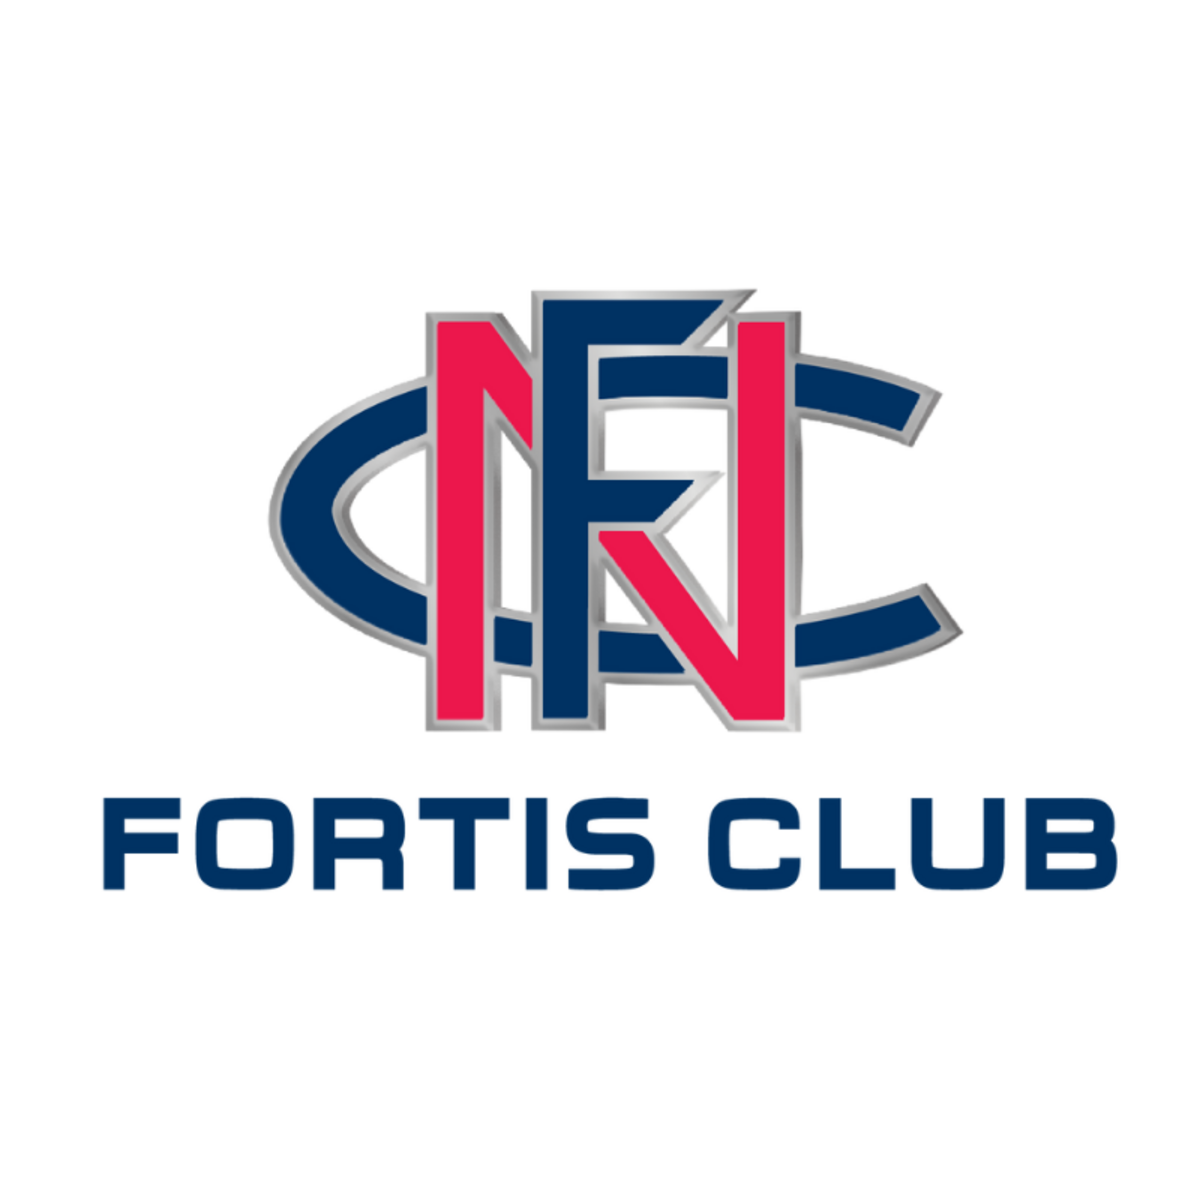 Fortis club - Norwood Football Club